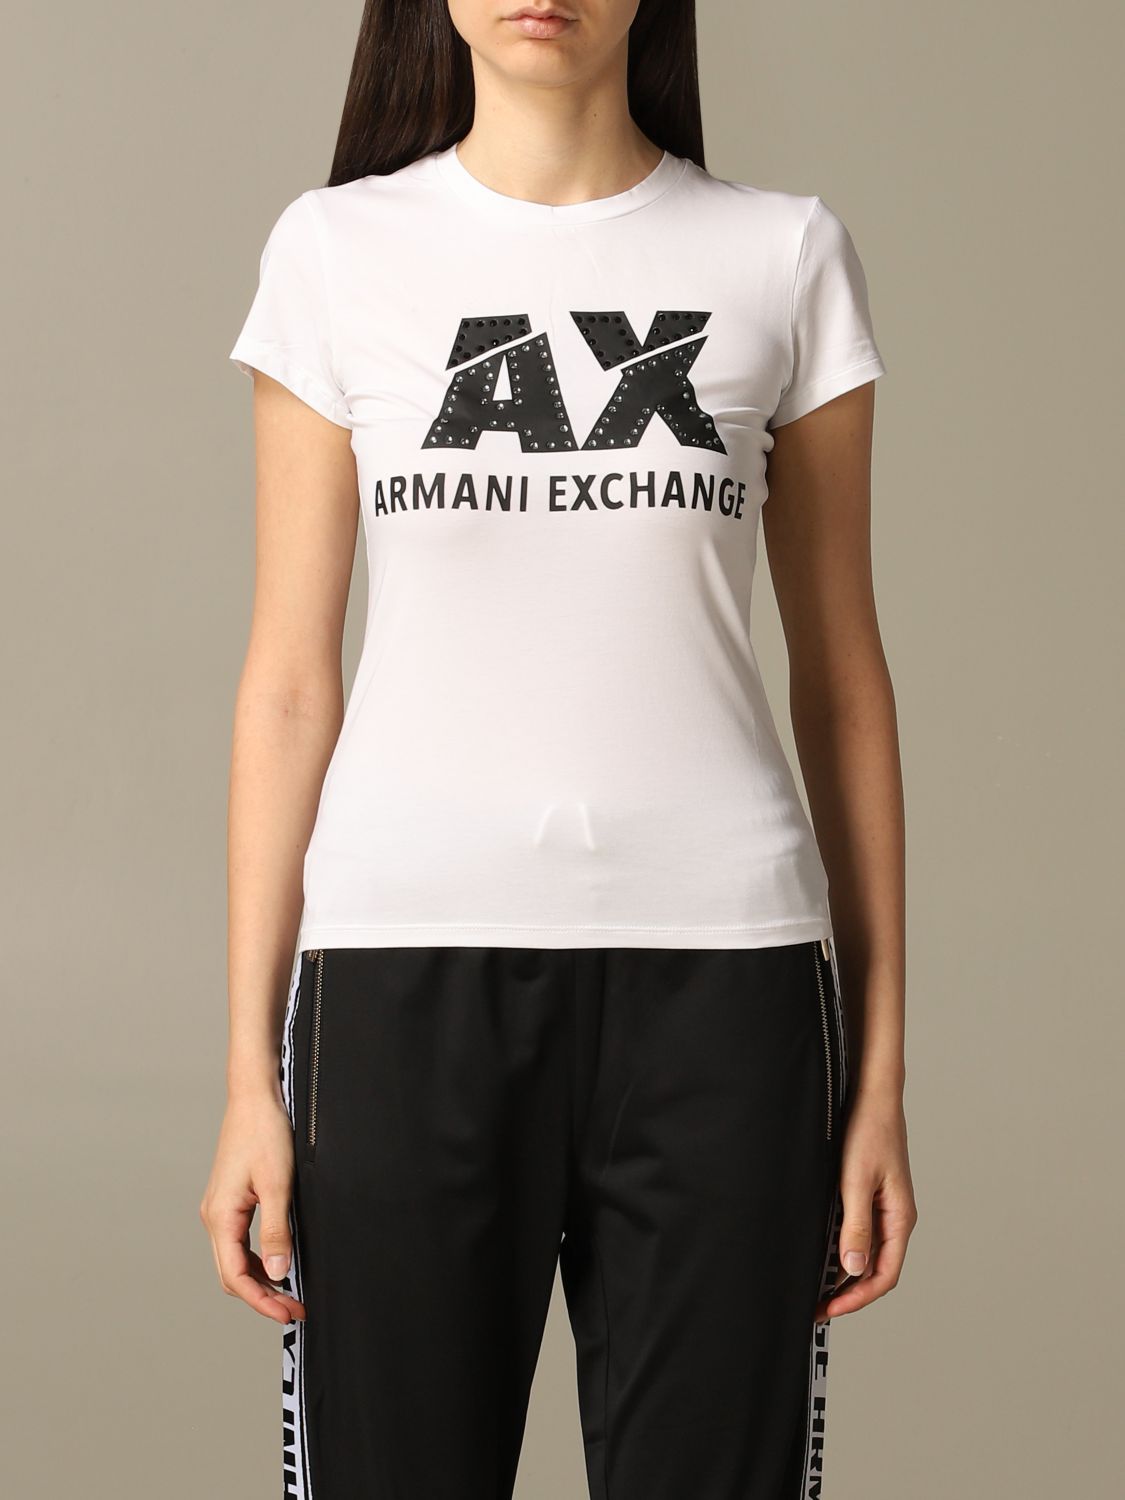 armani exchange women t shirts